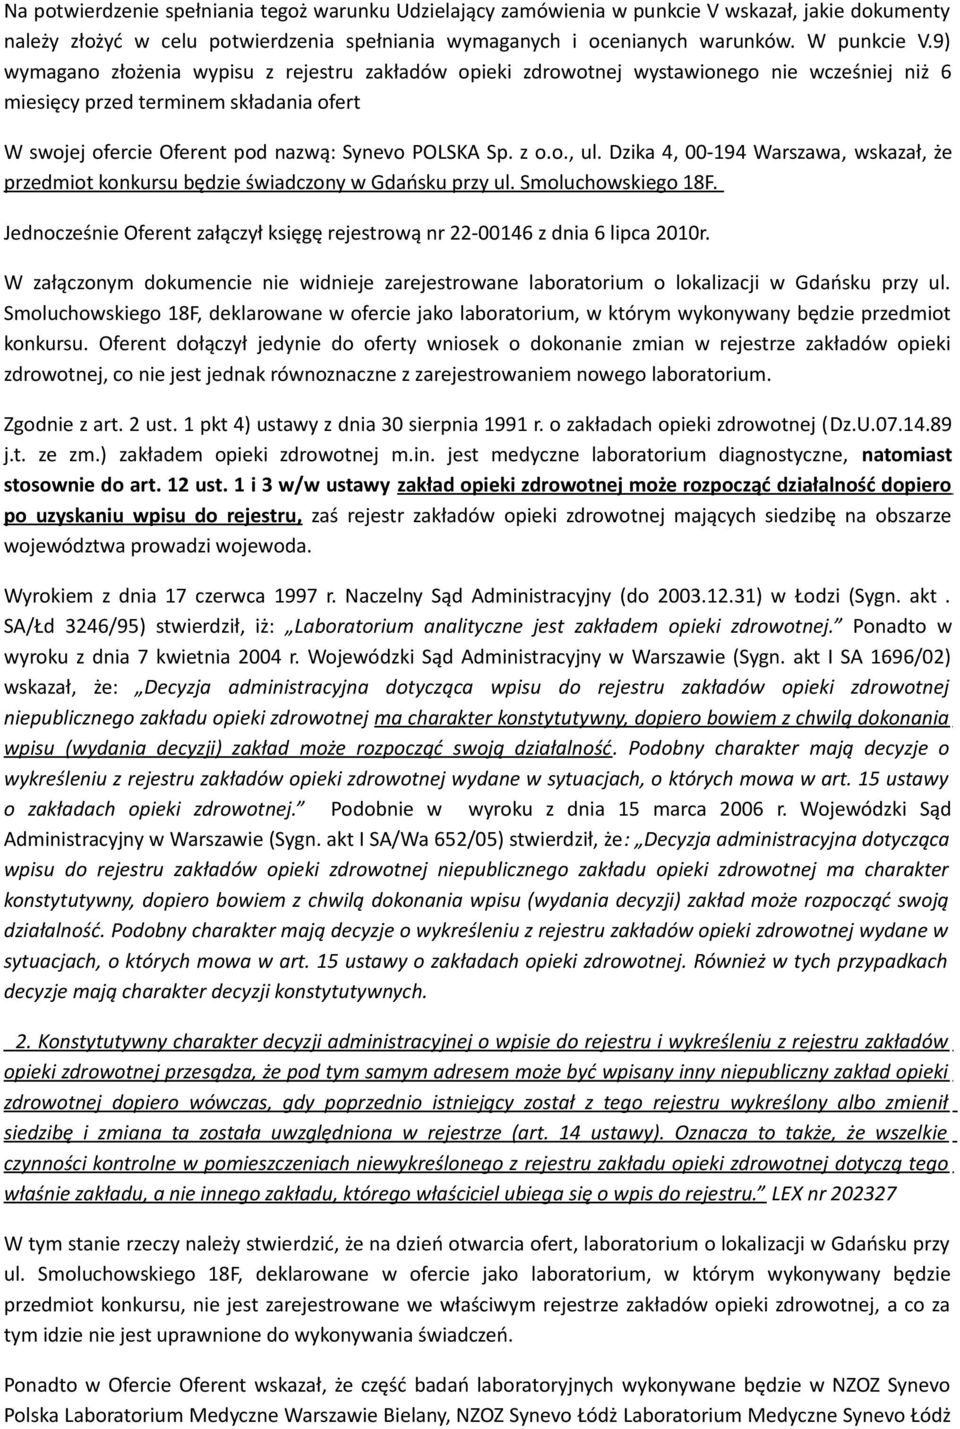 Dzika 4, 00-194 Warszawa, wskazał, że przedmiot konkursu będzie świadczony w Gdańsku przy ul. Smoluchowskiego 18F. Jednocześnie Oferent załączył księgę rejestrową nr 22-00146 z dnia 6 lipca 2010r.